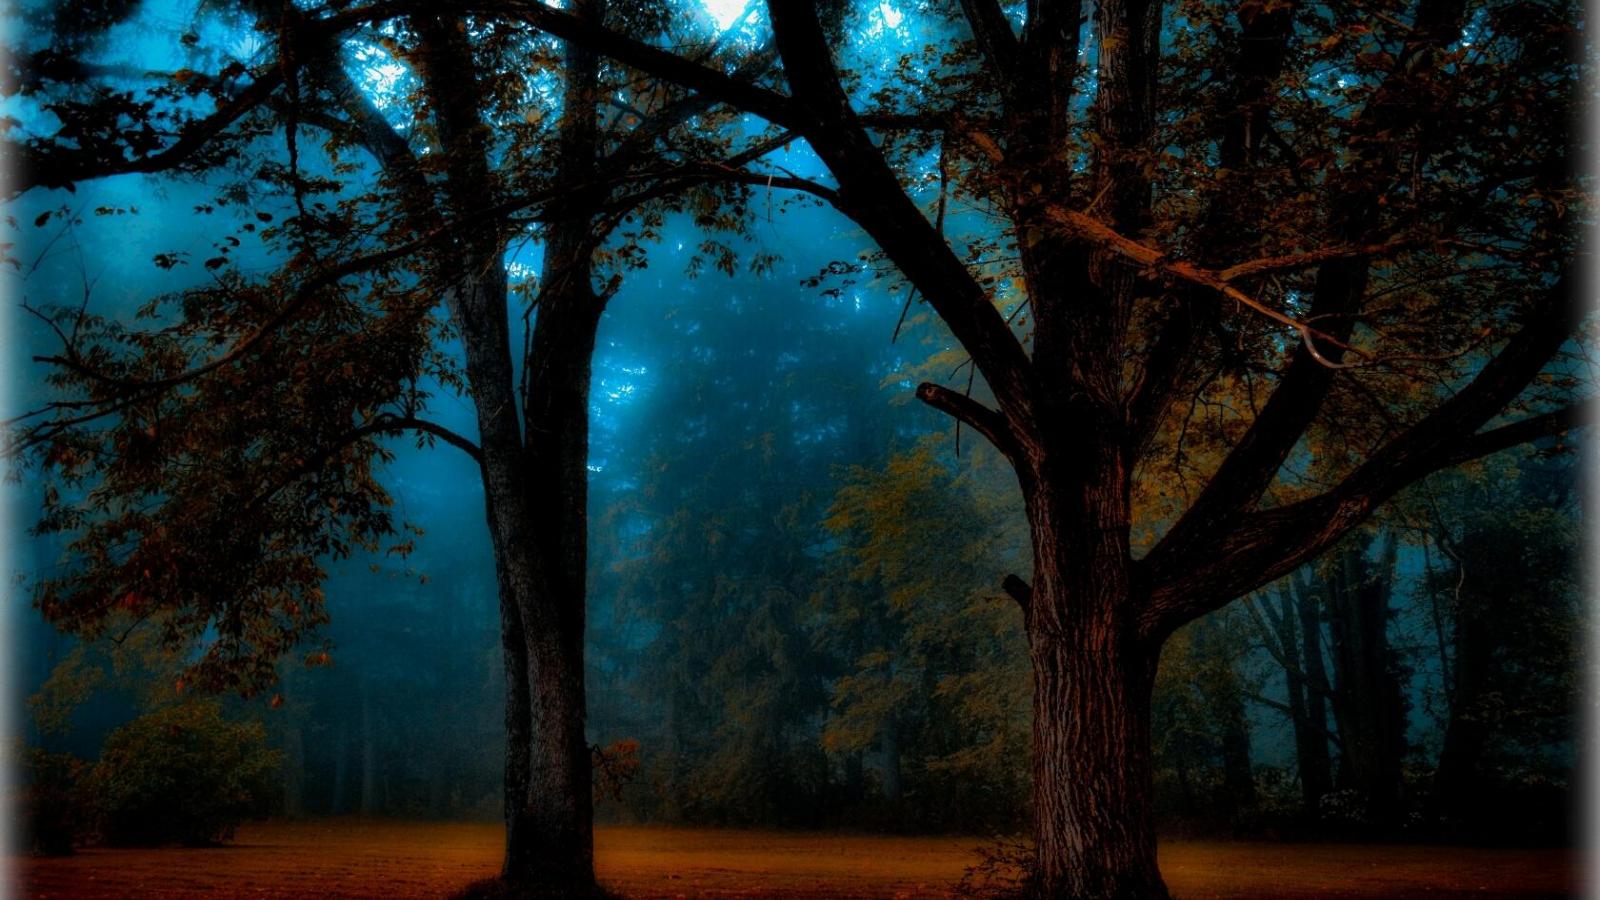 Скачать обои бесплатно Лес, Дерево, Туман, Синий, Земля/природа картинка на рабочий стол ПК